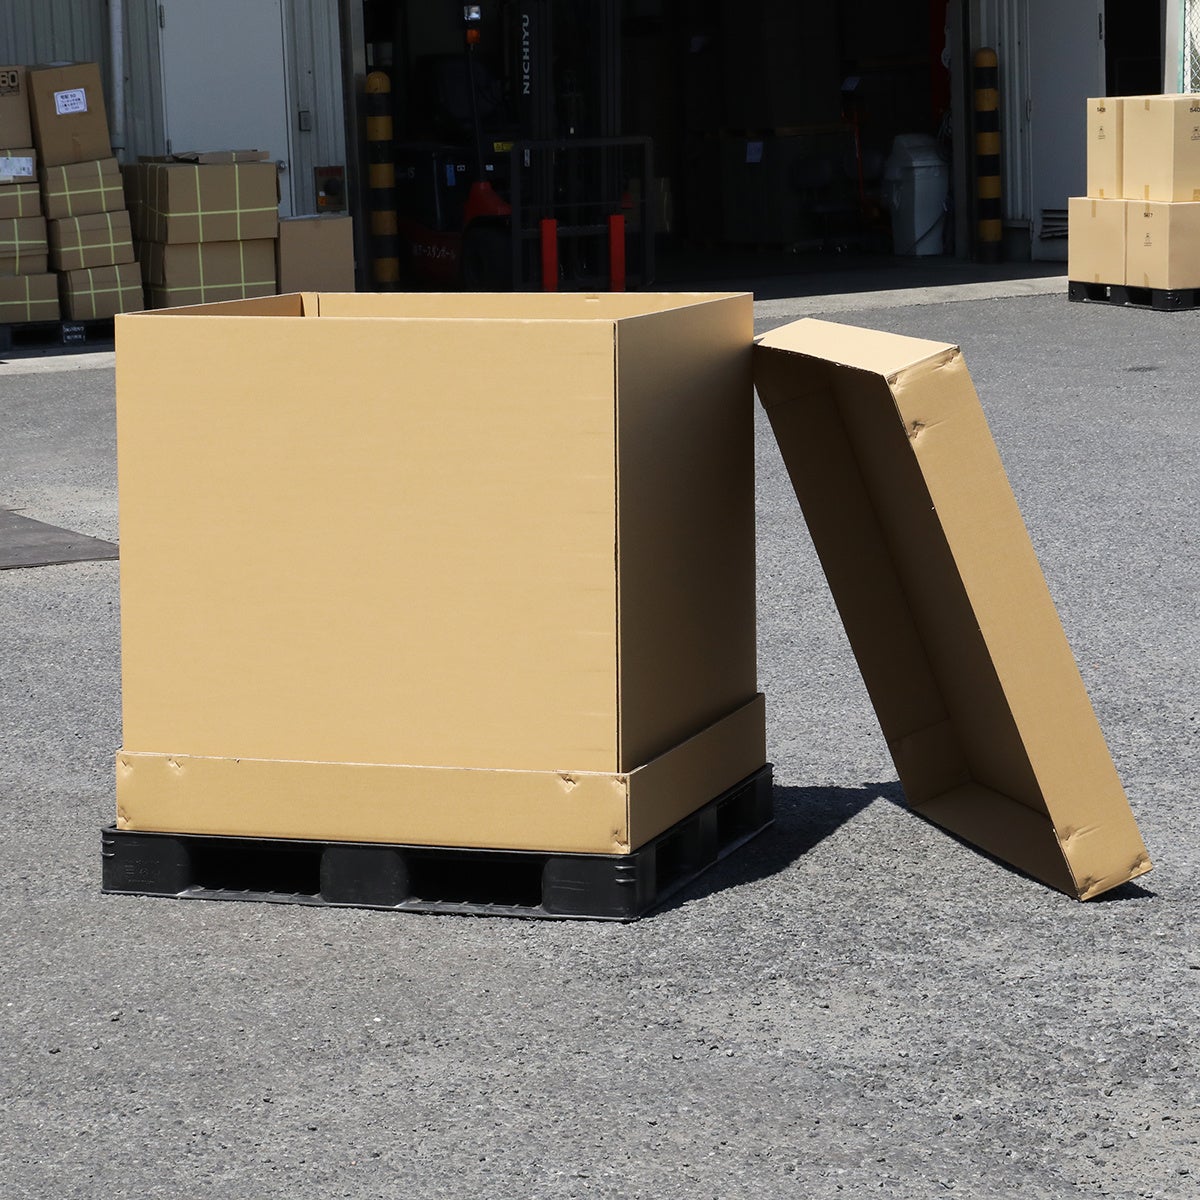 【特大サイズ】1メートル角のダンボール箱が新登場！大型製品の輸送やイベントの小道具としても大活躍